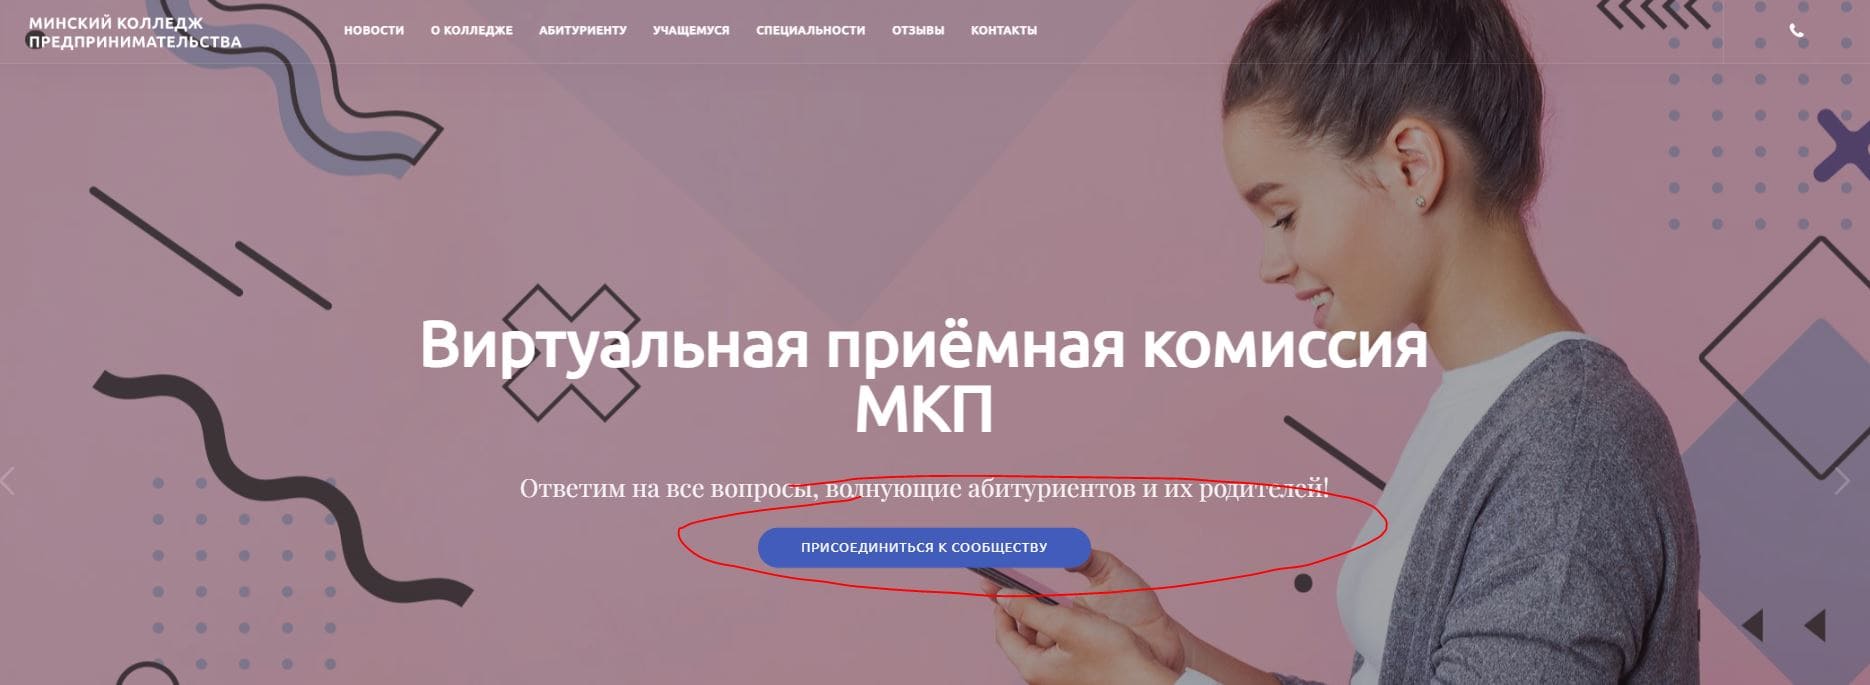 Минский колледж предпринимательства (mtp.by) – официальный сайт